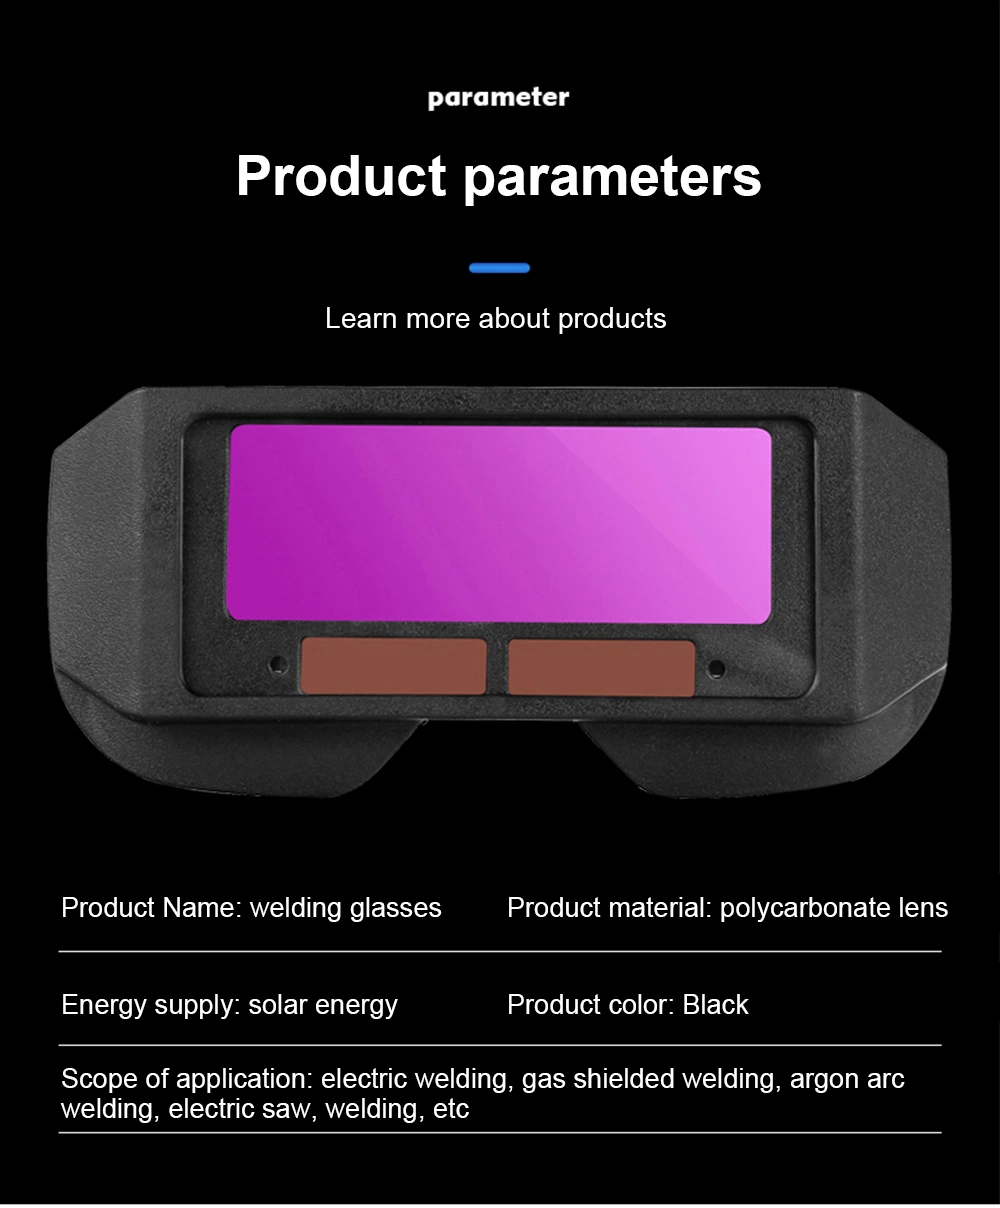 Factory New Technology Auto Darkening Welding Glasses Used for Welder Welding Prevent Strong Light Damage Glasses